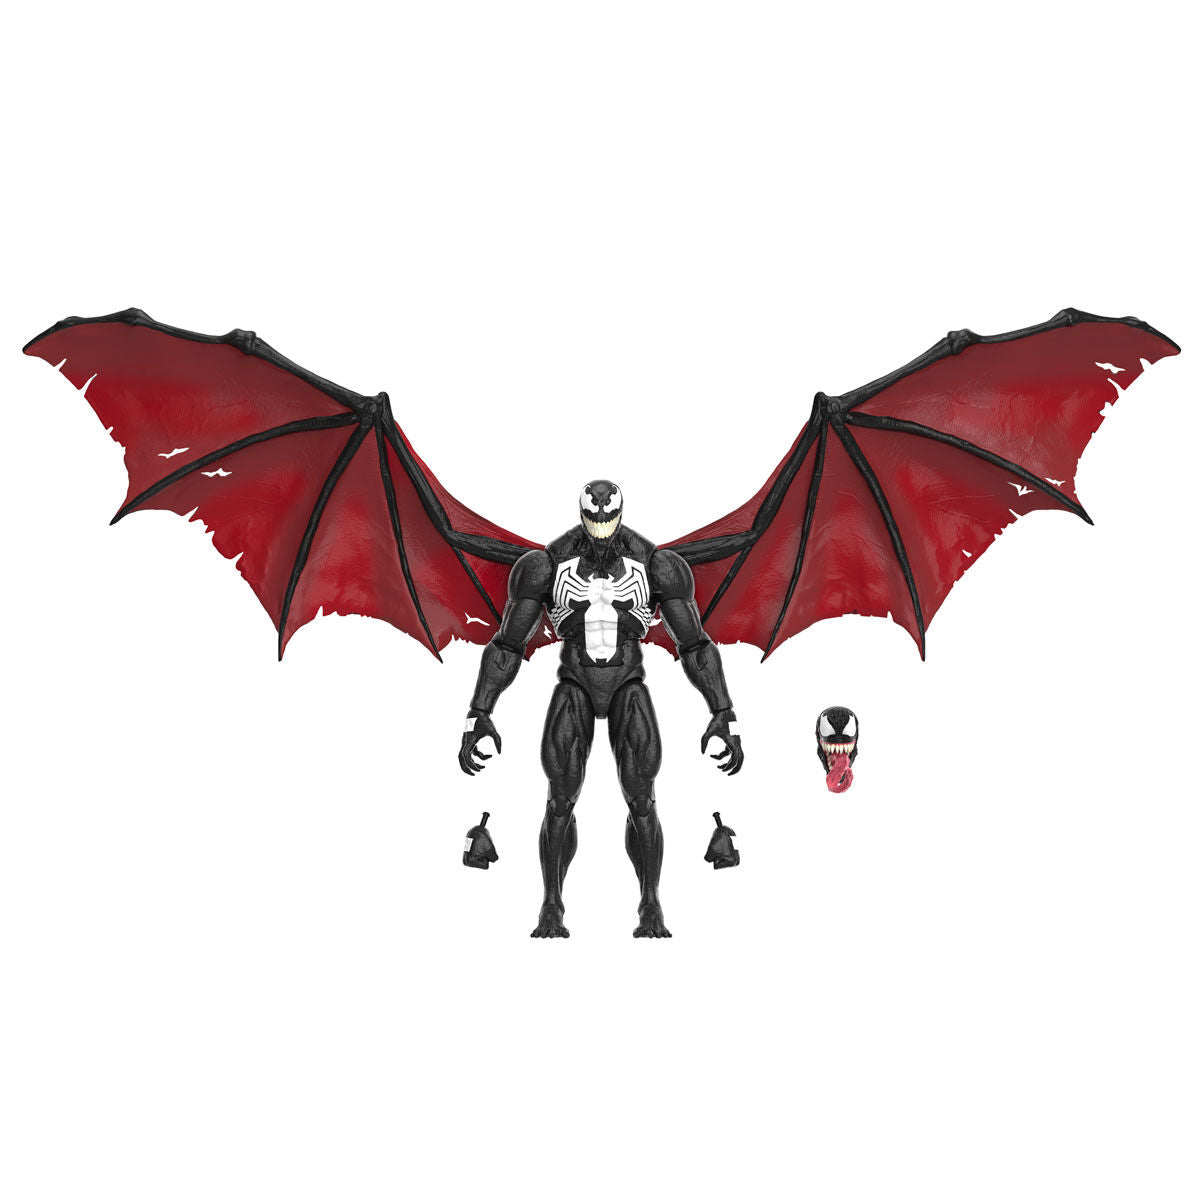 Blister 2 figuras Mavel Knull y Venom King in Black Marvel Legends 15cm